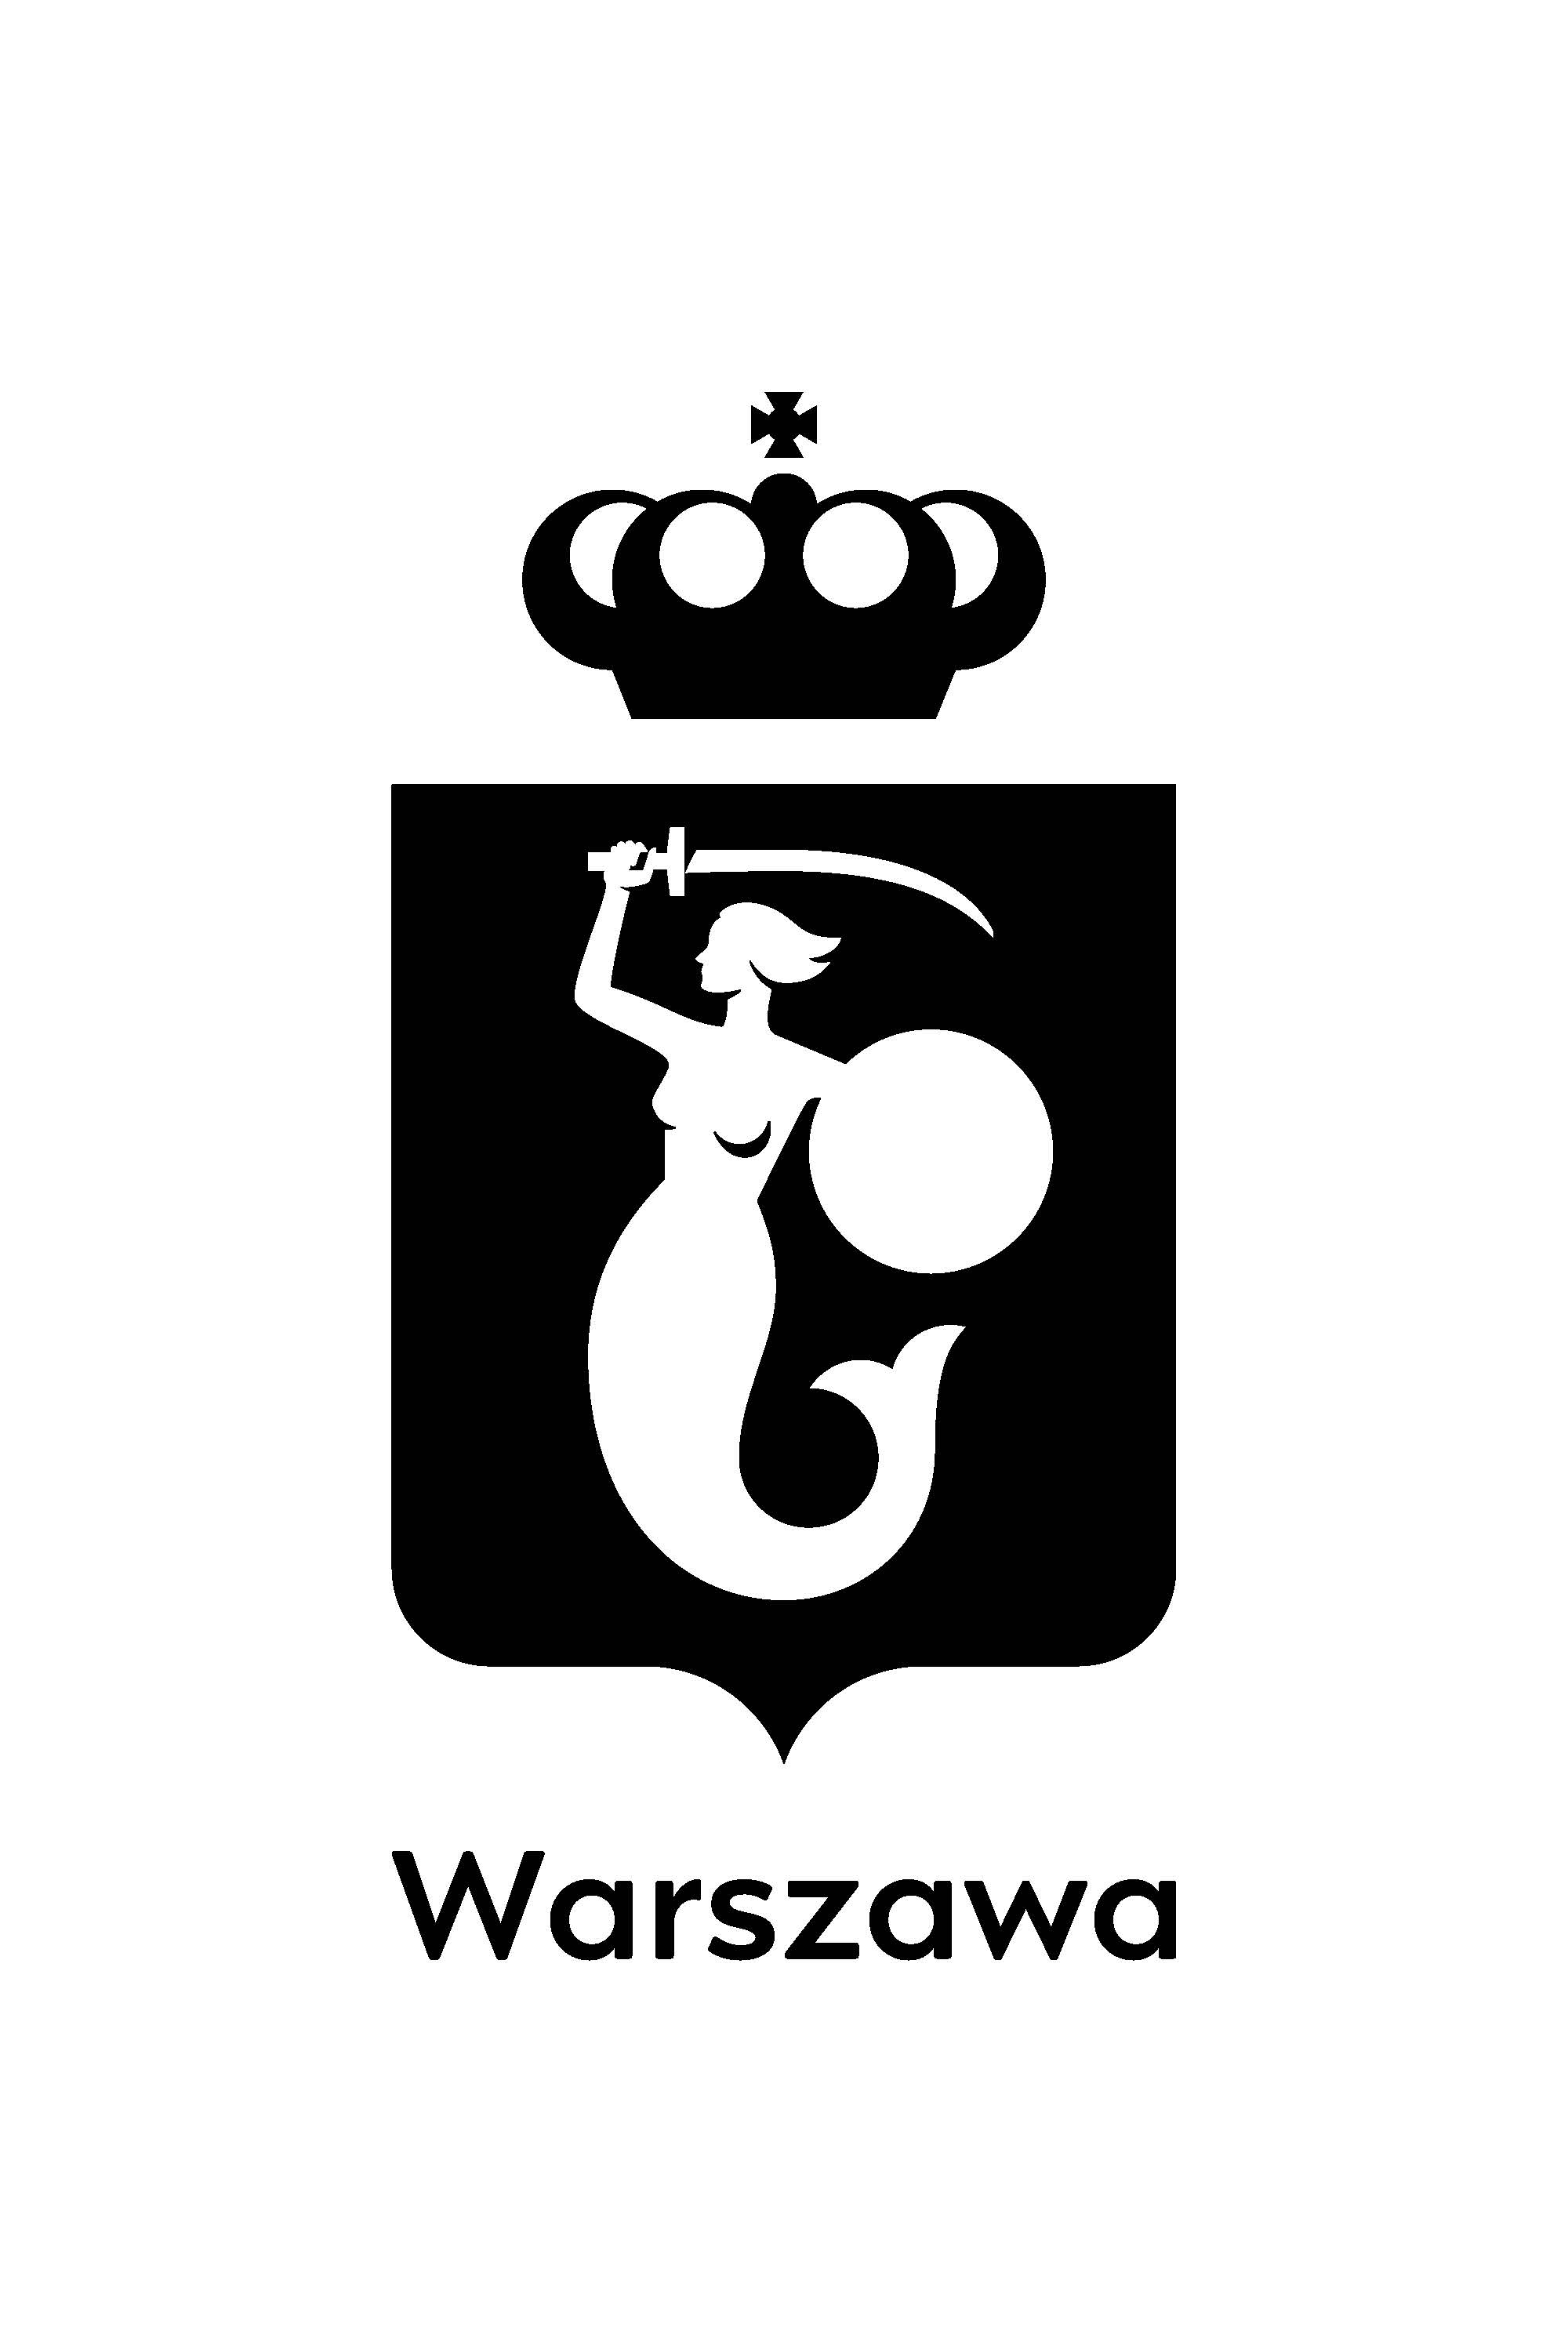 miastu stołecznemu Warszawie